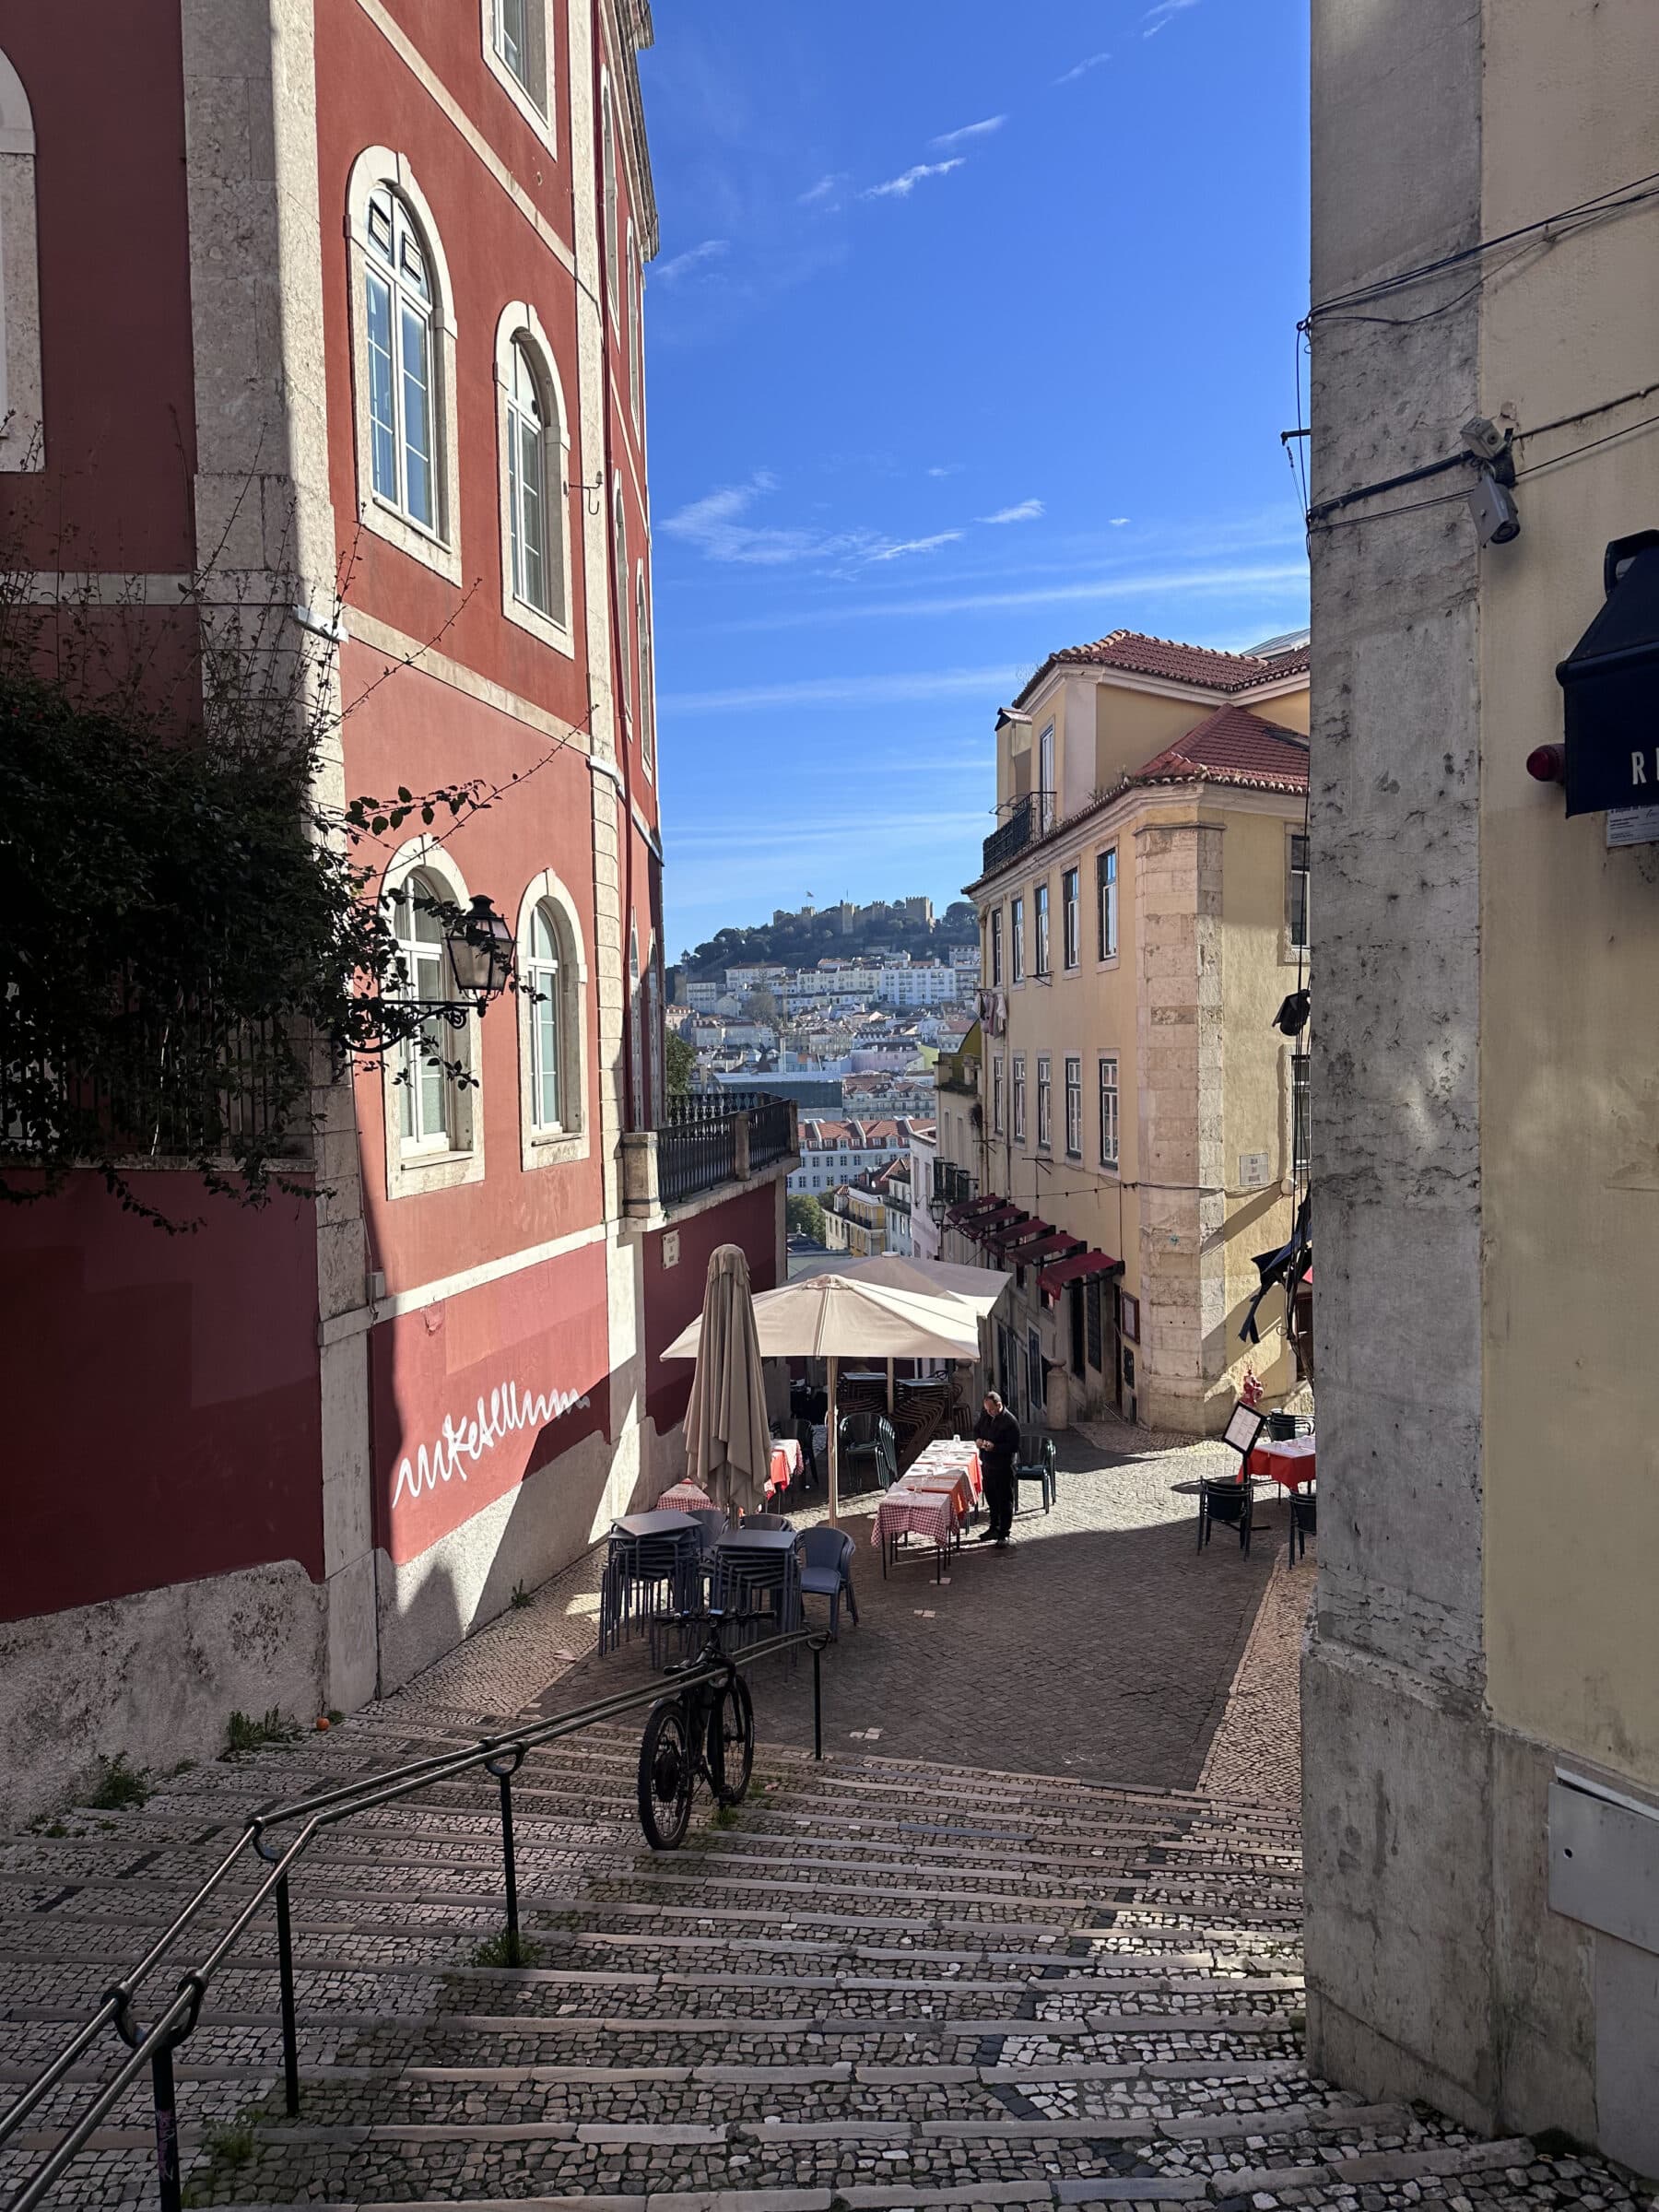 One last picturesque Lisbon street shot